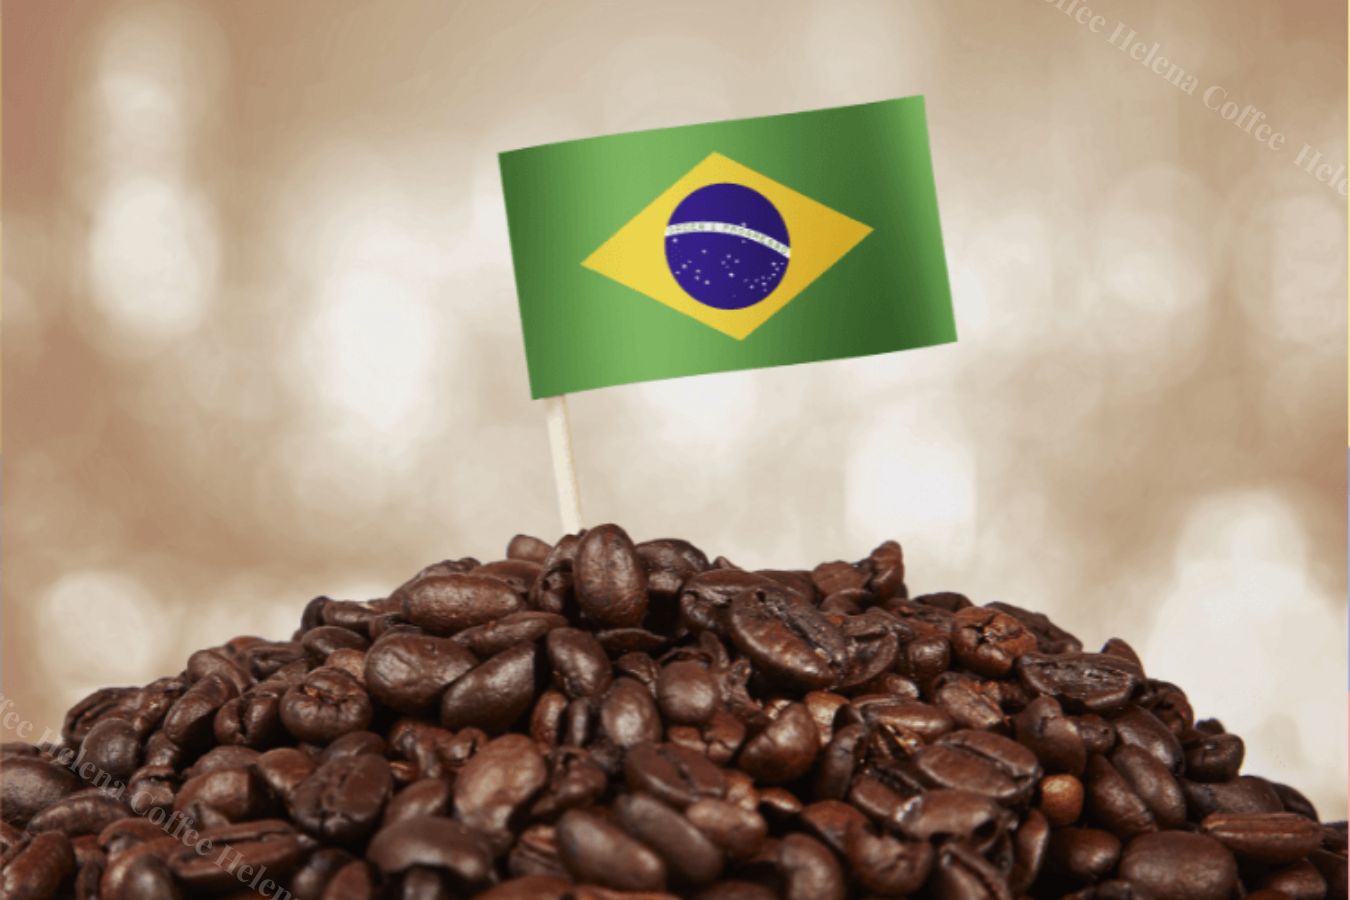 Biggest Coffee Exporters: Top 6 In The World - Helena Coffee Vietnam